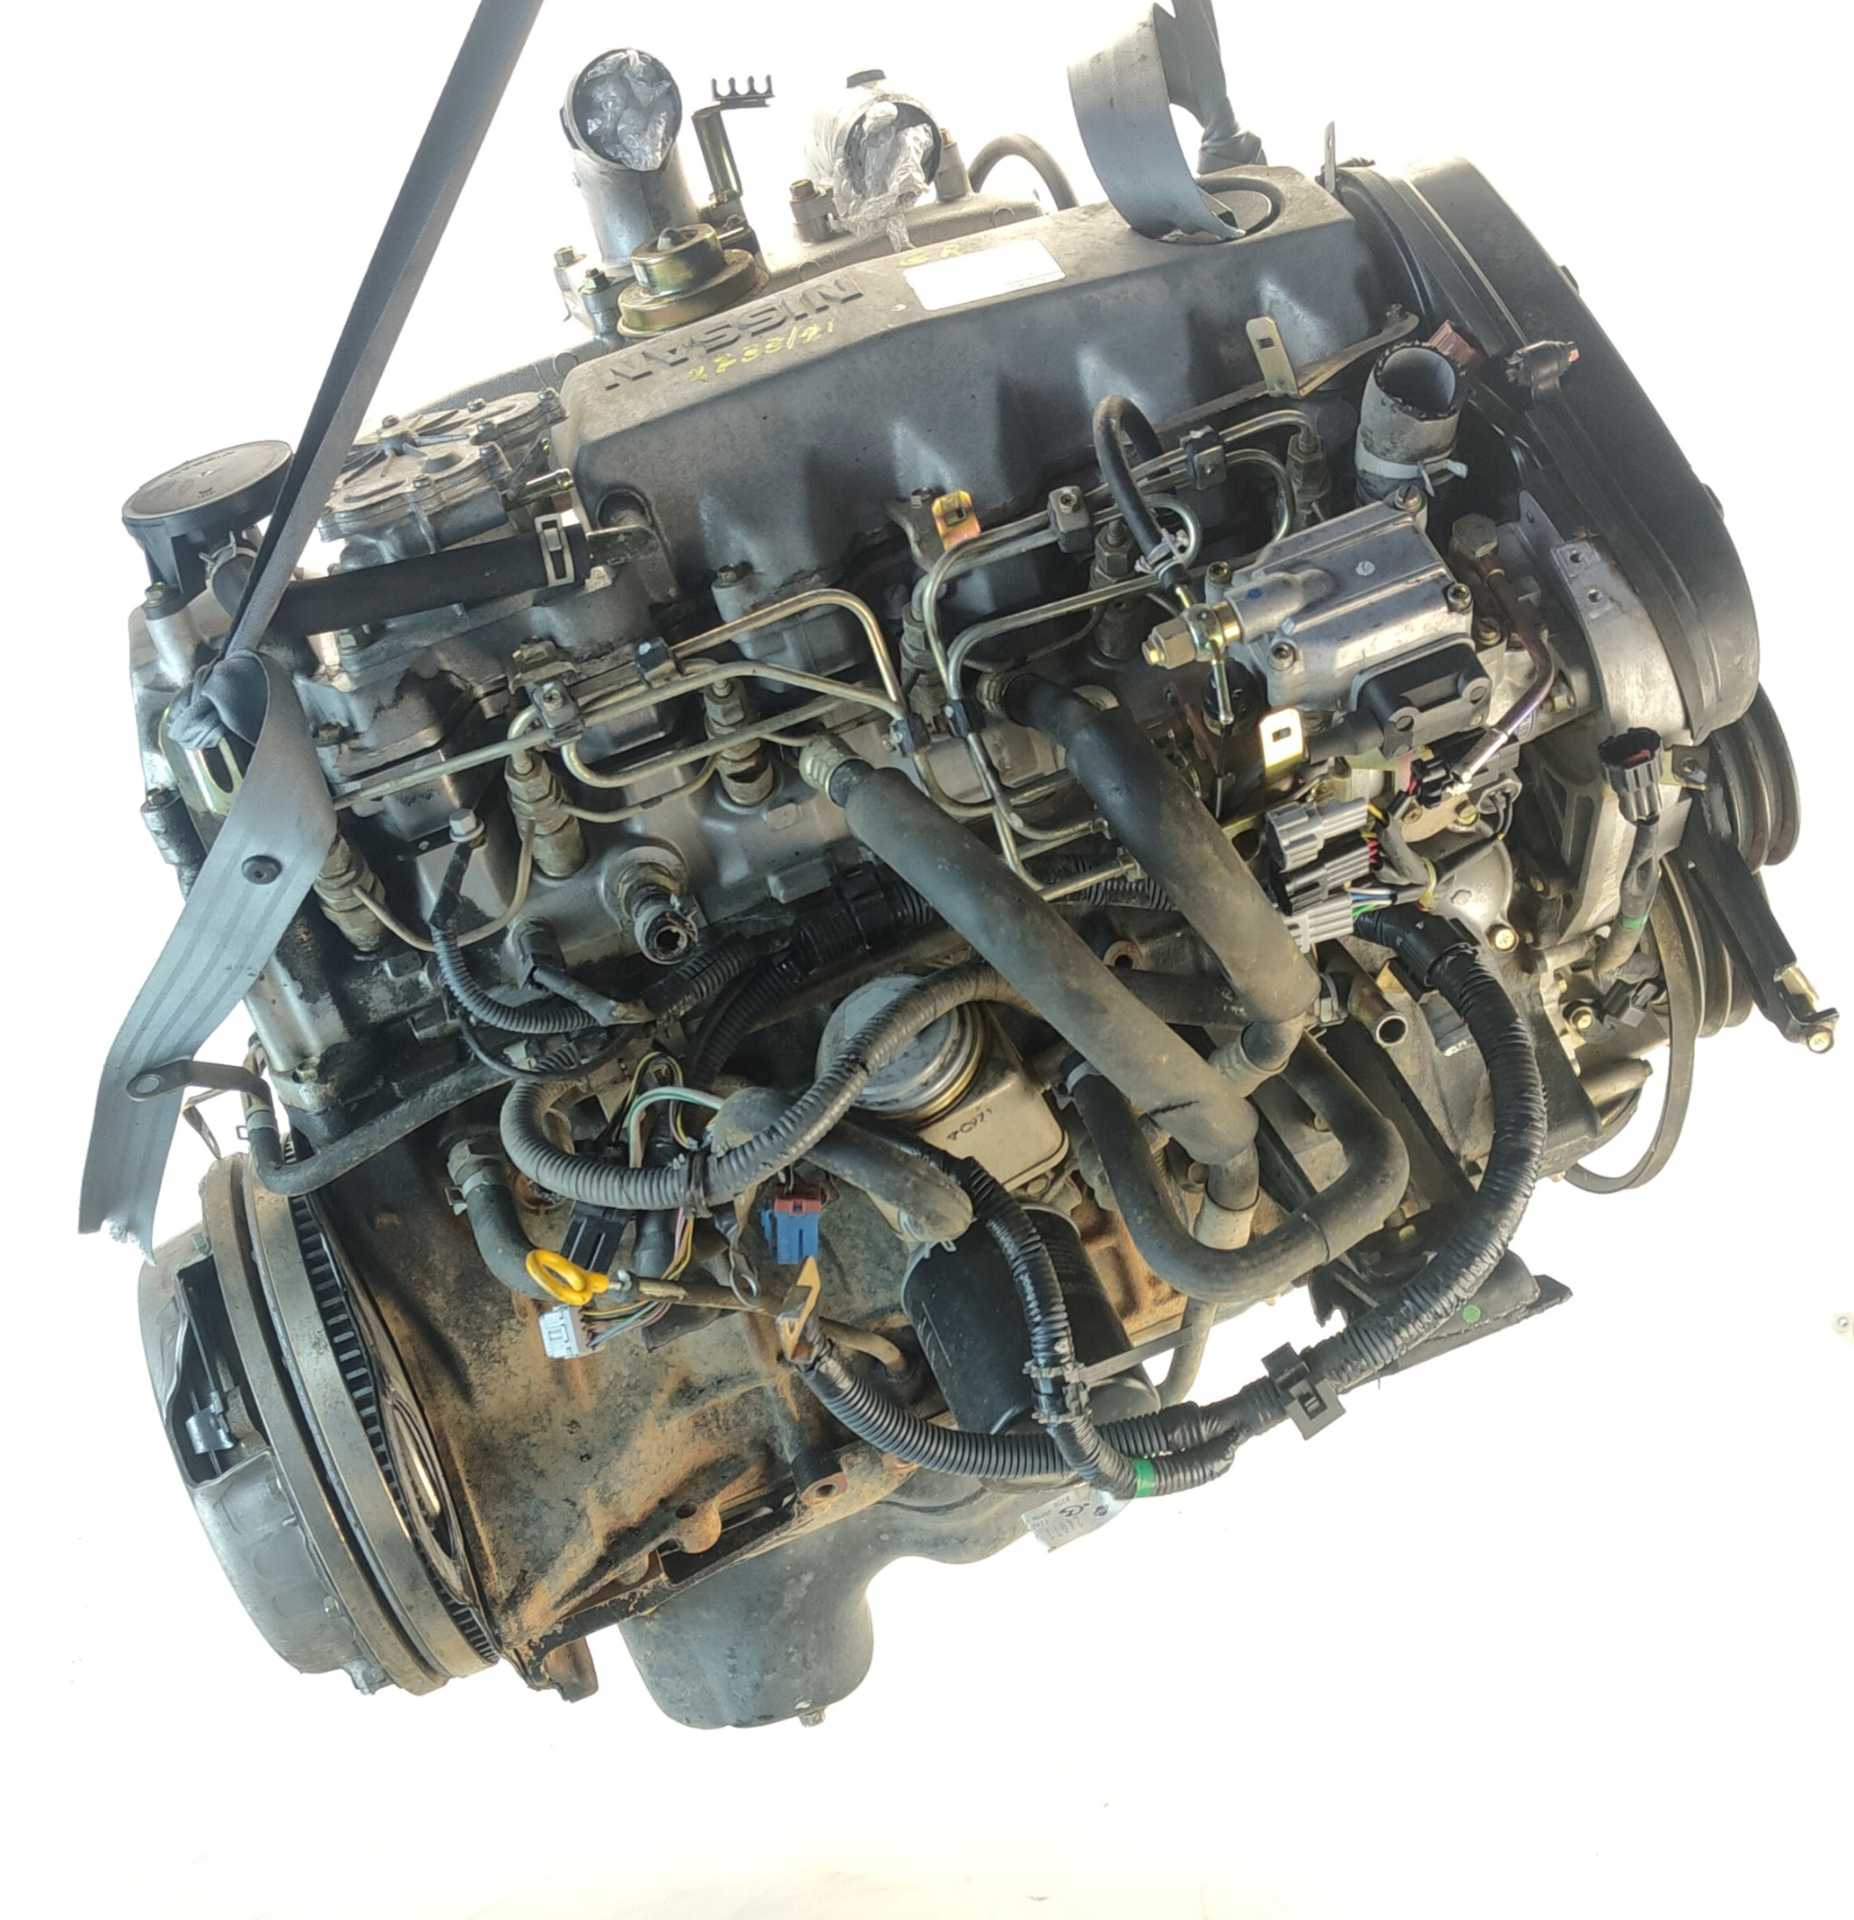 MOTOR NISSAN PATROL GR V Wagon 2.8 TD (95 KW / 129 CV) (06.1997 – 05.2000)